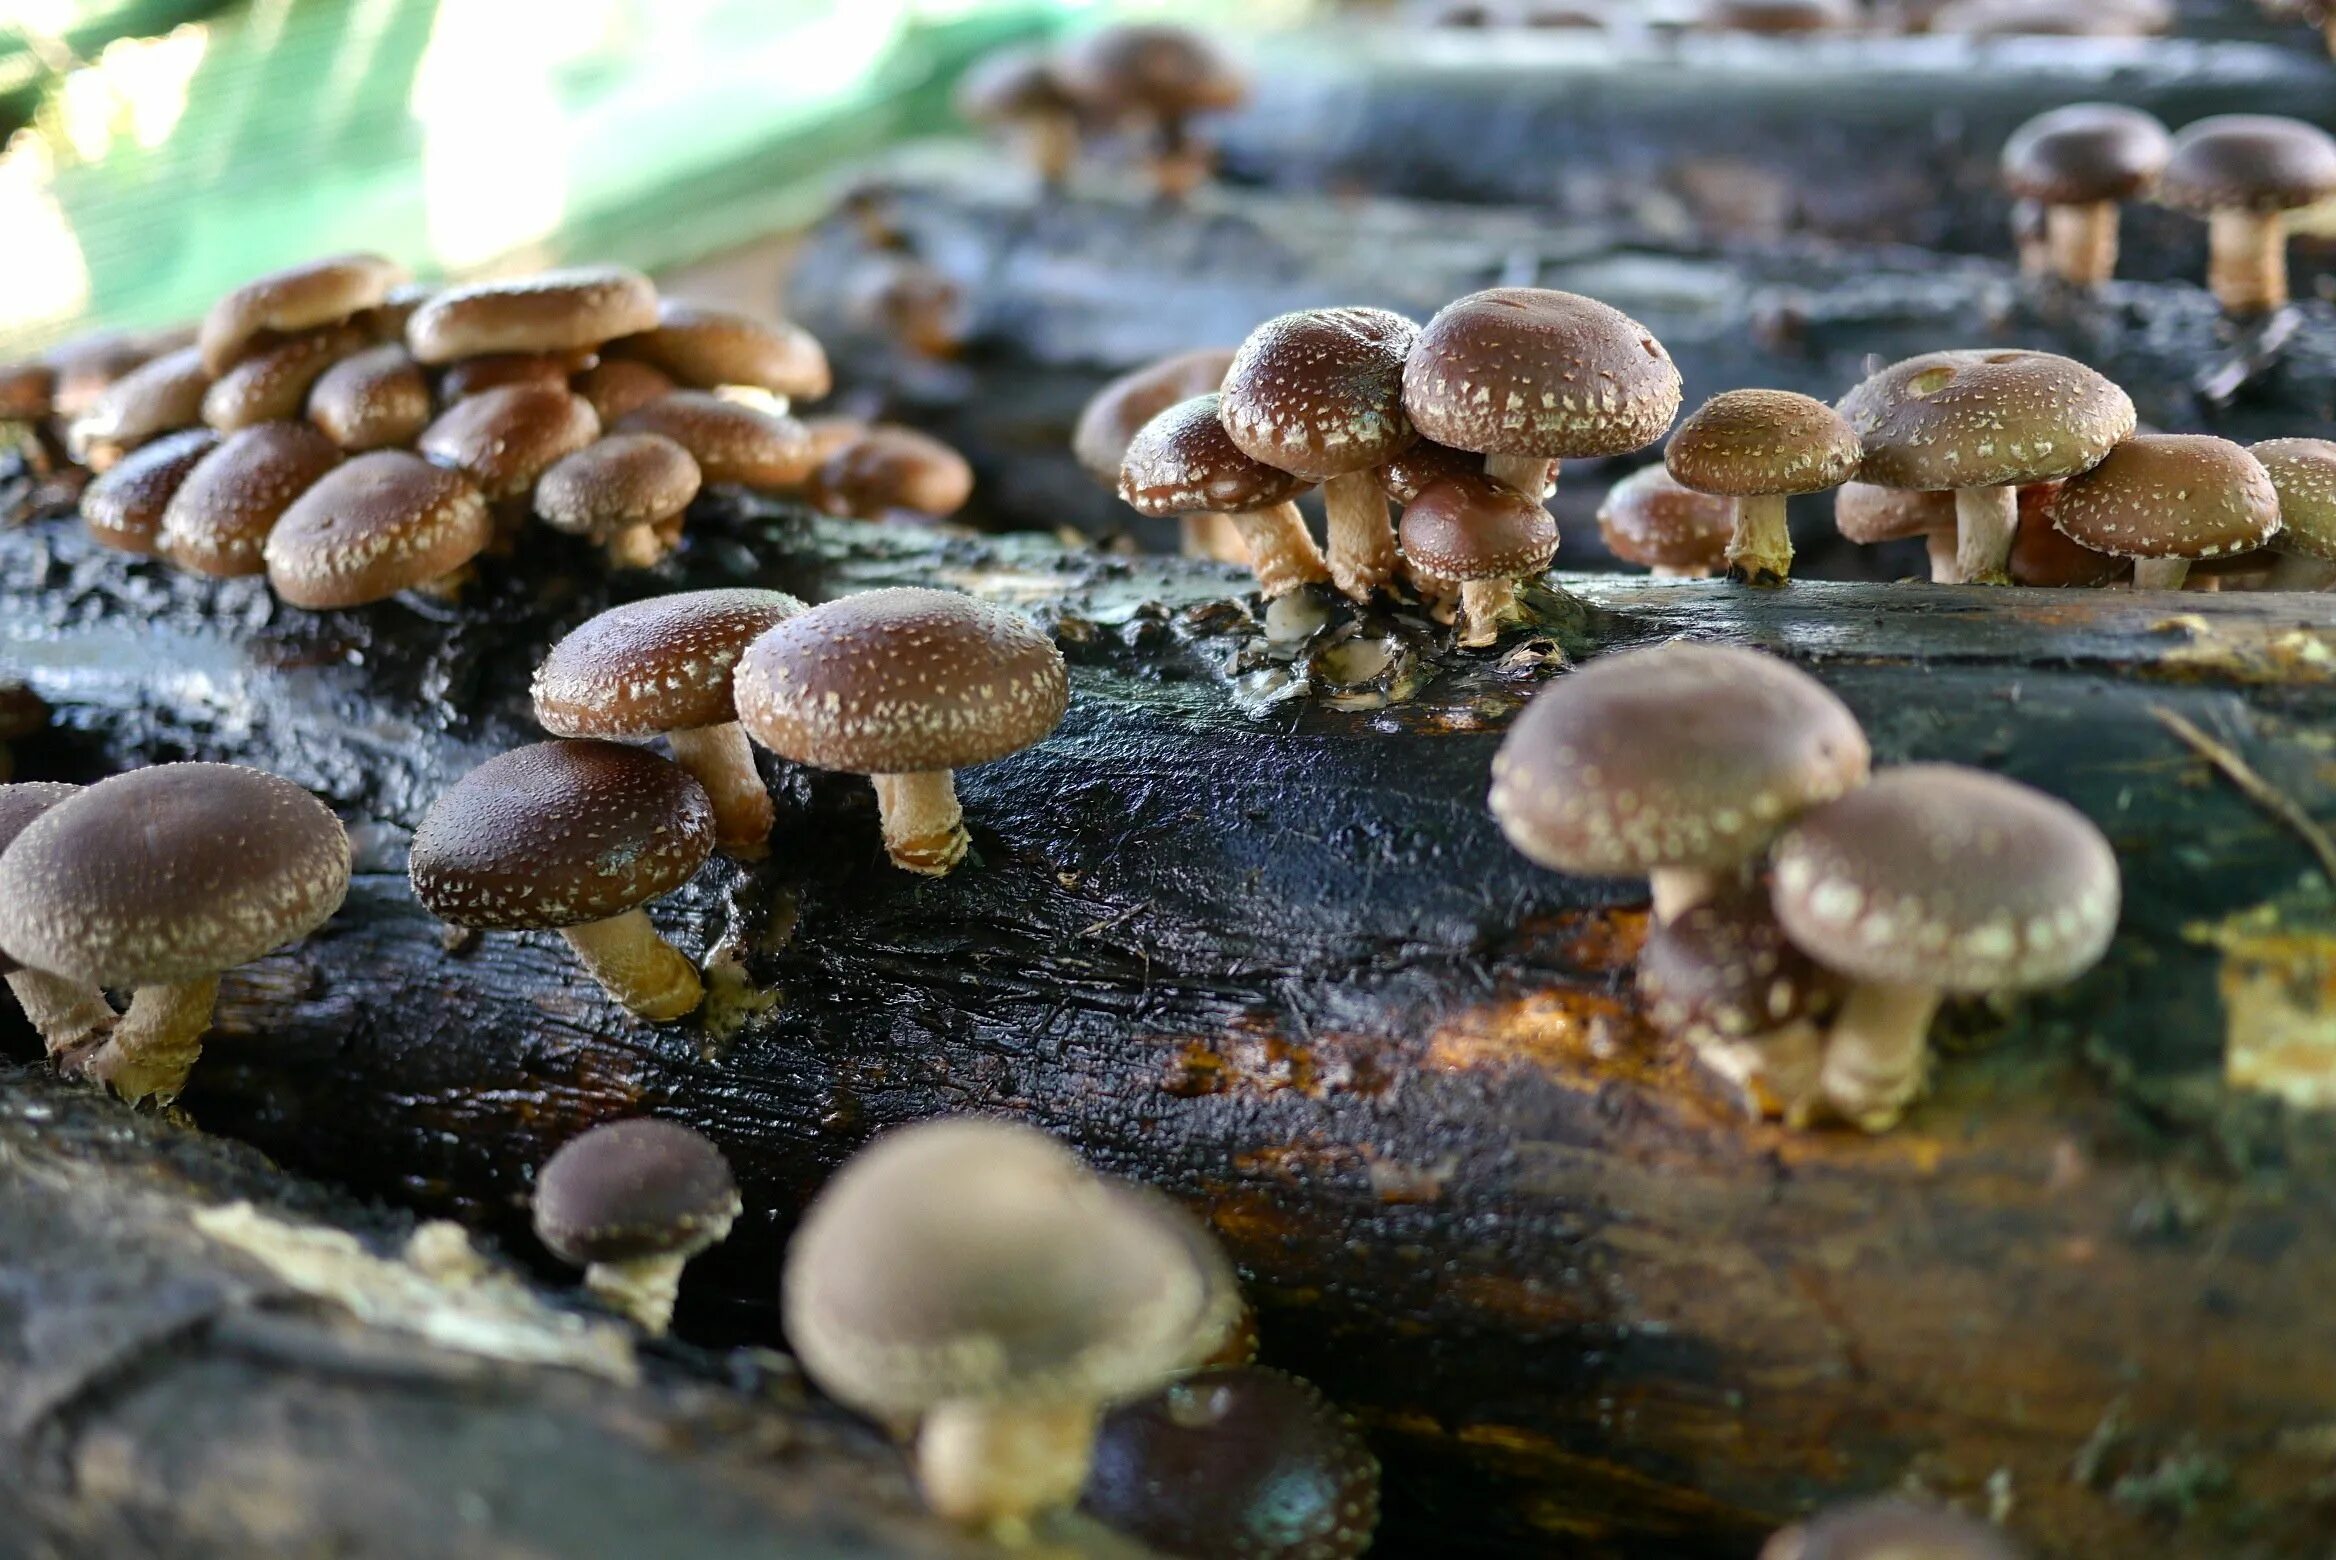 Шиитаке свойства. Шиитаке грибы Императорский шампиньон. Японские грибы шиитаке. Шиитаке Lentinus edodes. Опята шиитаке.